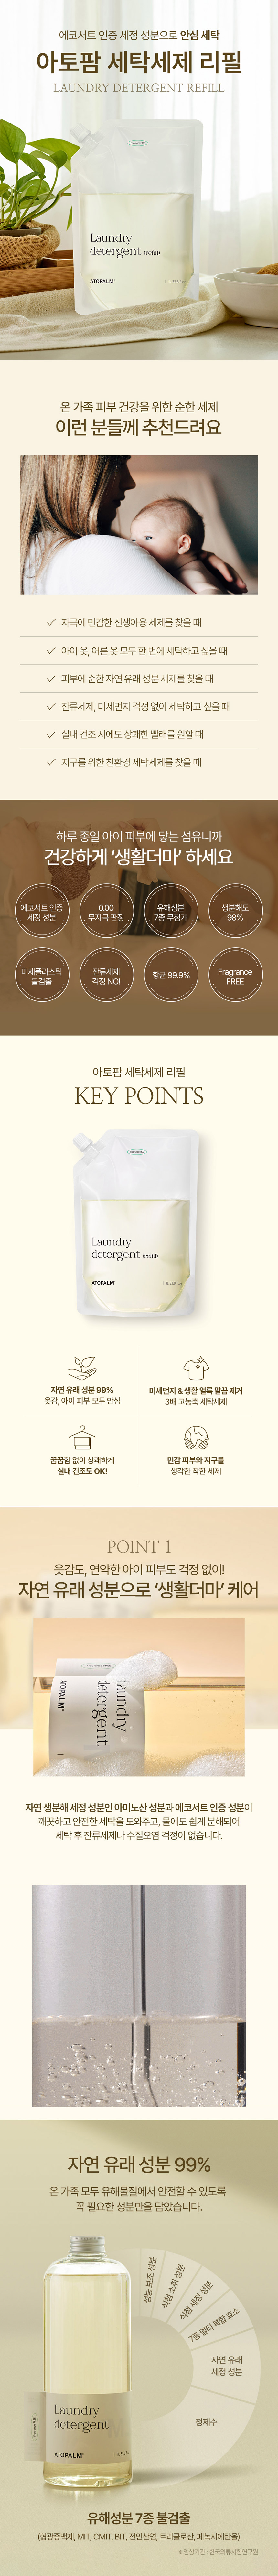 laundry_detergent_refill_01.jpg